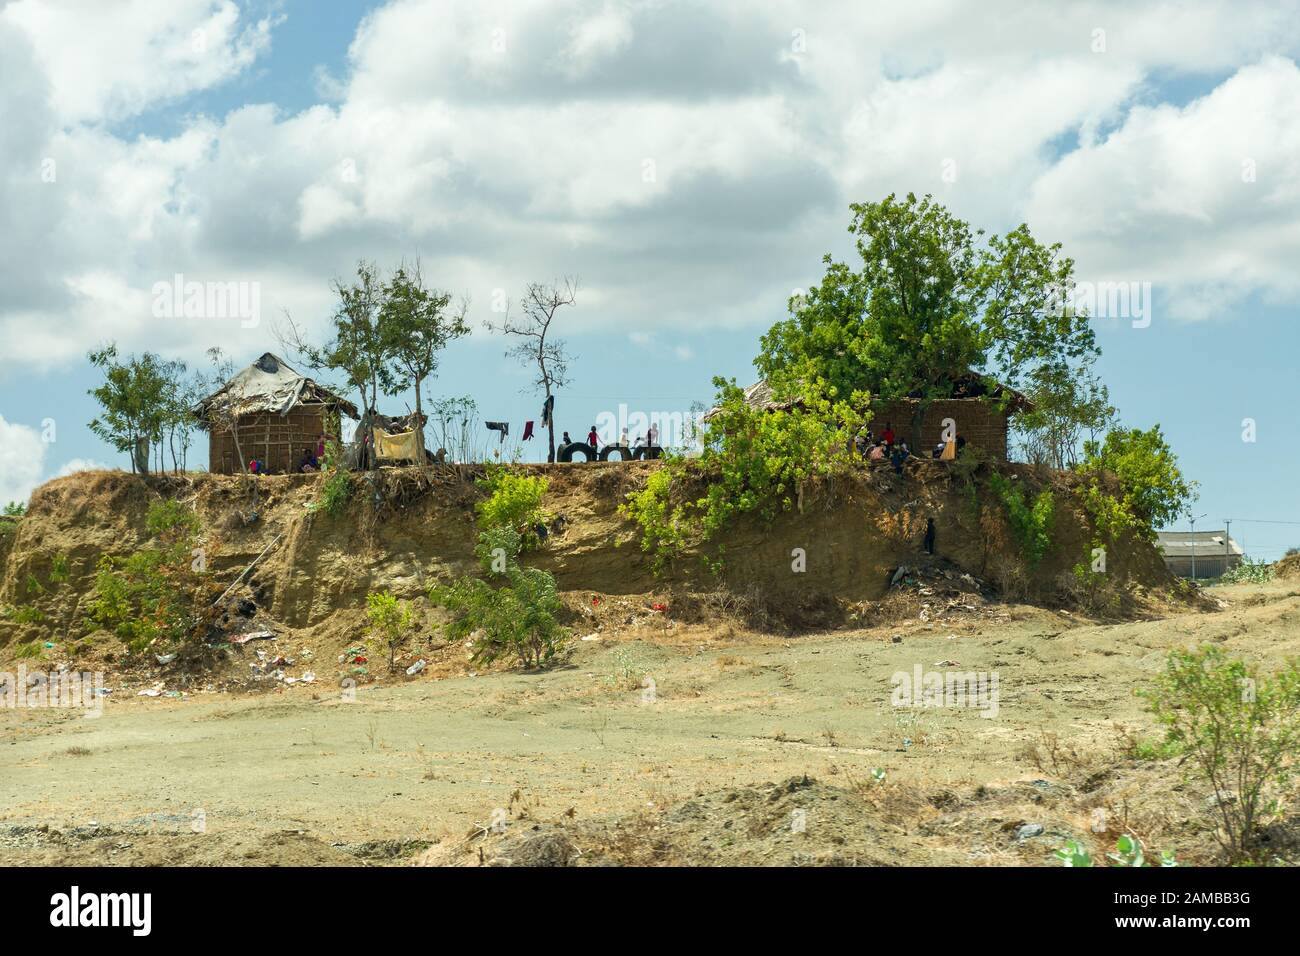 Mud hut housing on a small hill on the outskirts of Mombasa, Kenya Stock Photo